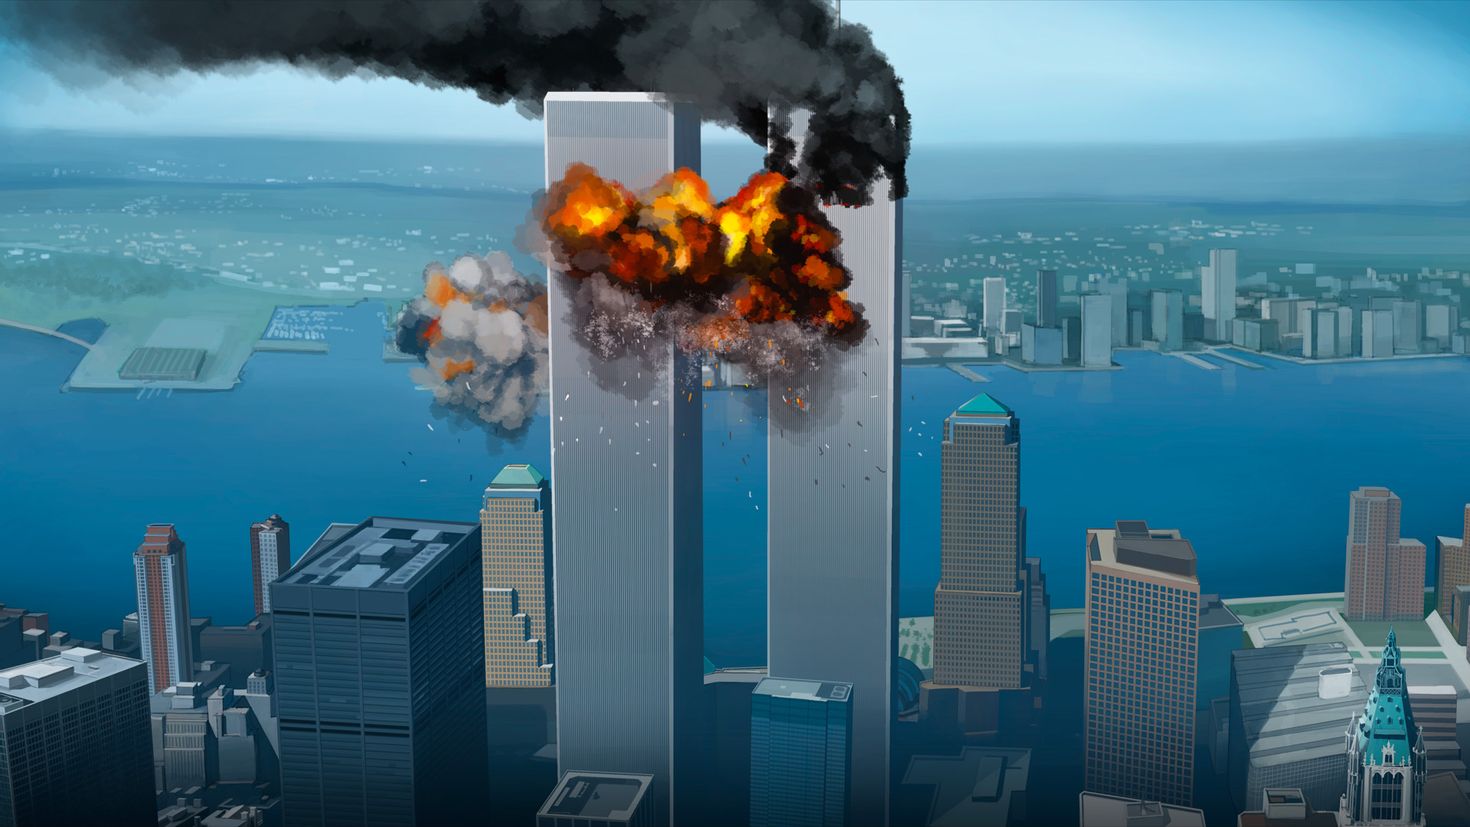 Небоскребы 2001. Башни-Близнецы 11 сентября 2001. Всемирный торговый центр в Нью-Йорке башни Близнецы. 2 Башни Близнецы 11 сентября.